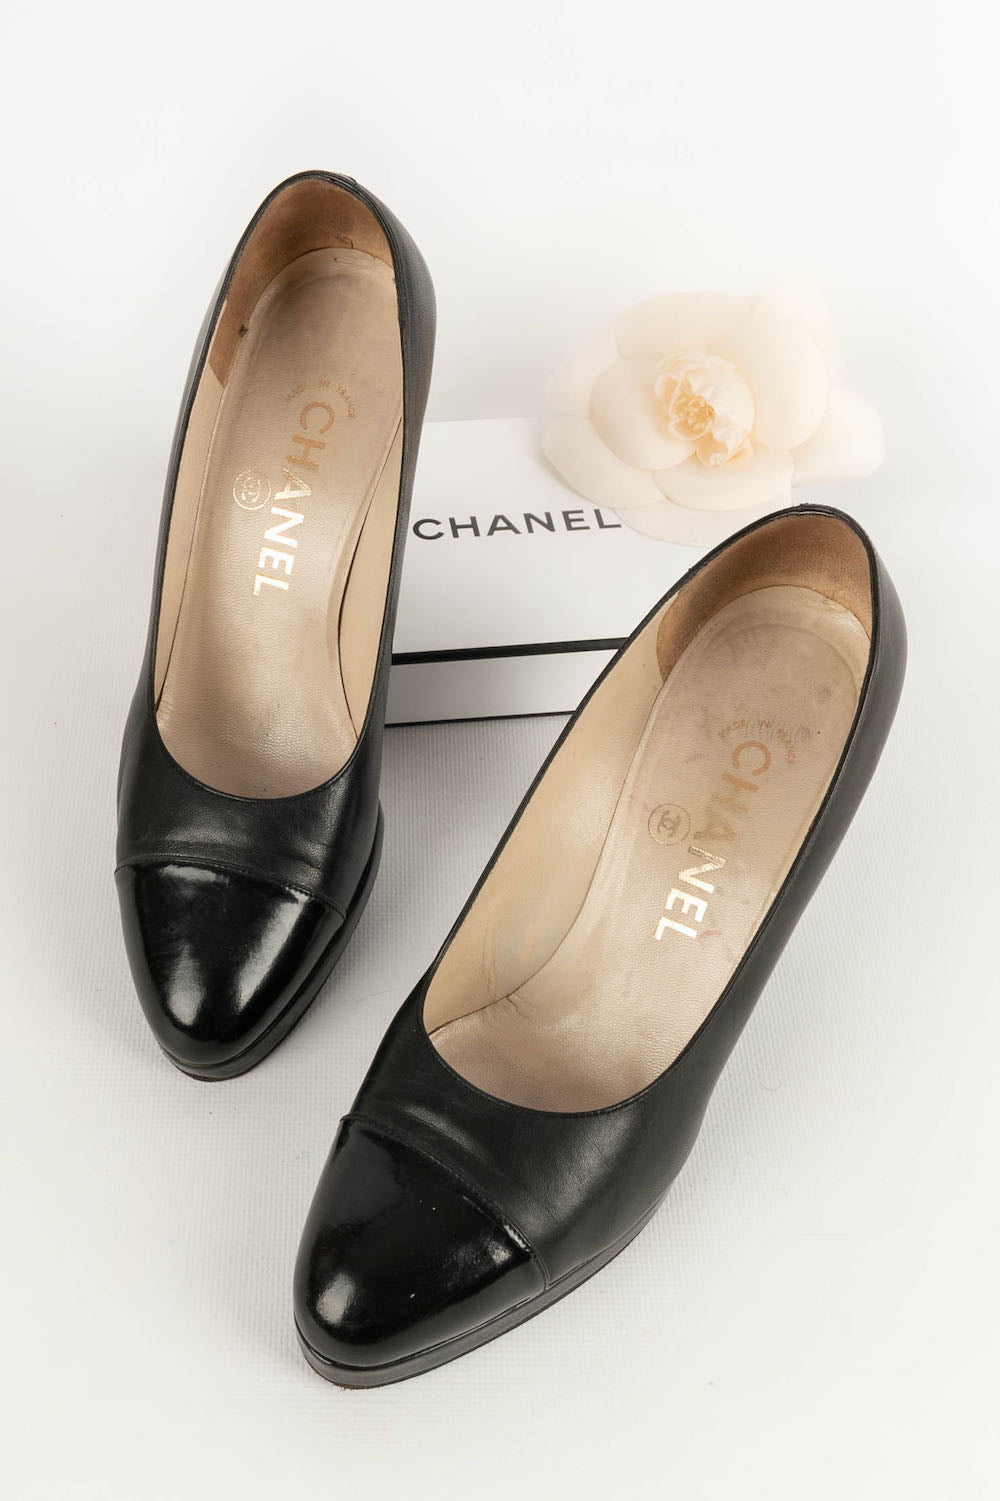 Chanel shoes – Les Merveilles De Babellou